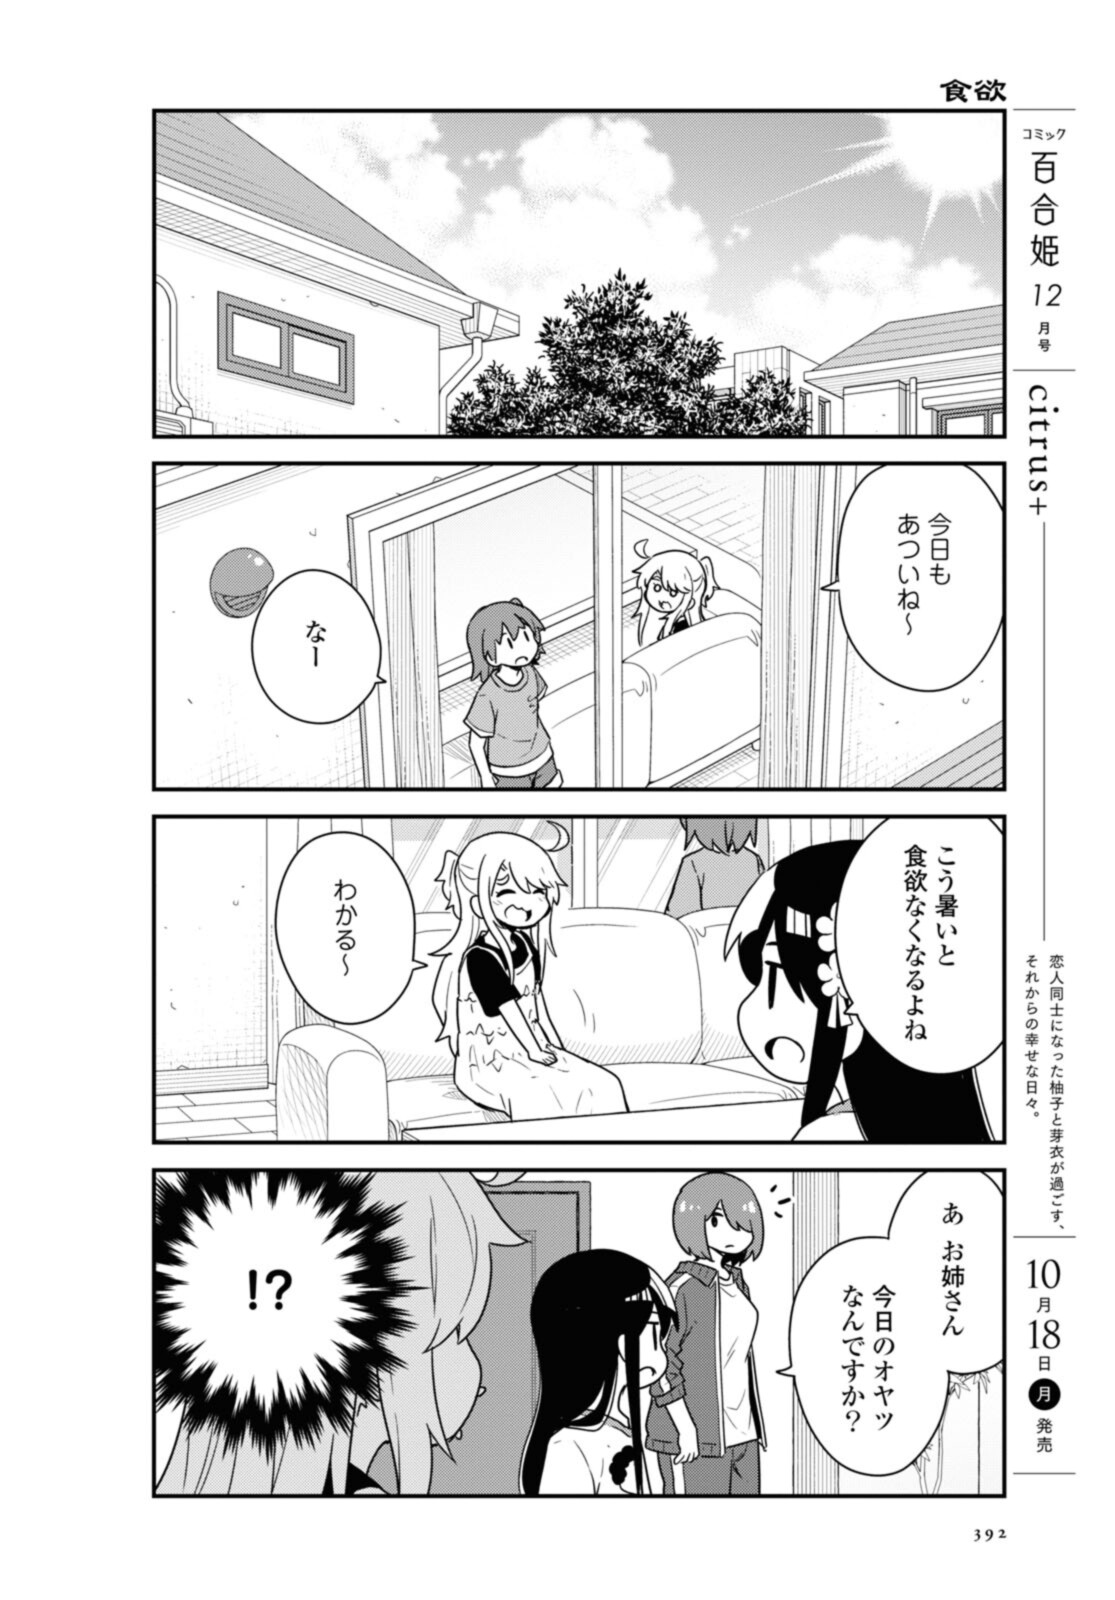 Watashi ni Tenshi ga Maiorita! - Chapter 88 - Page 5